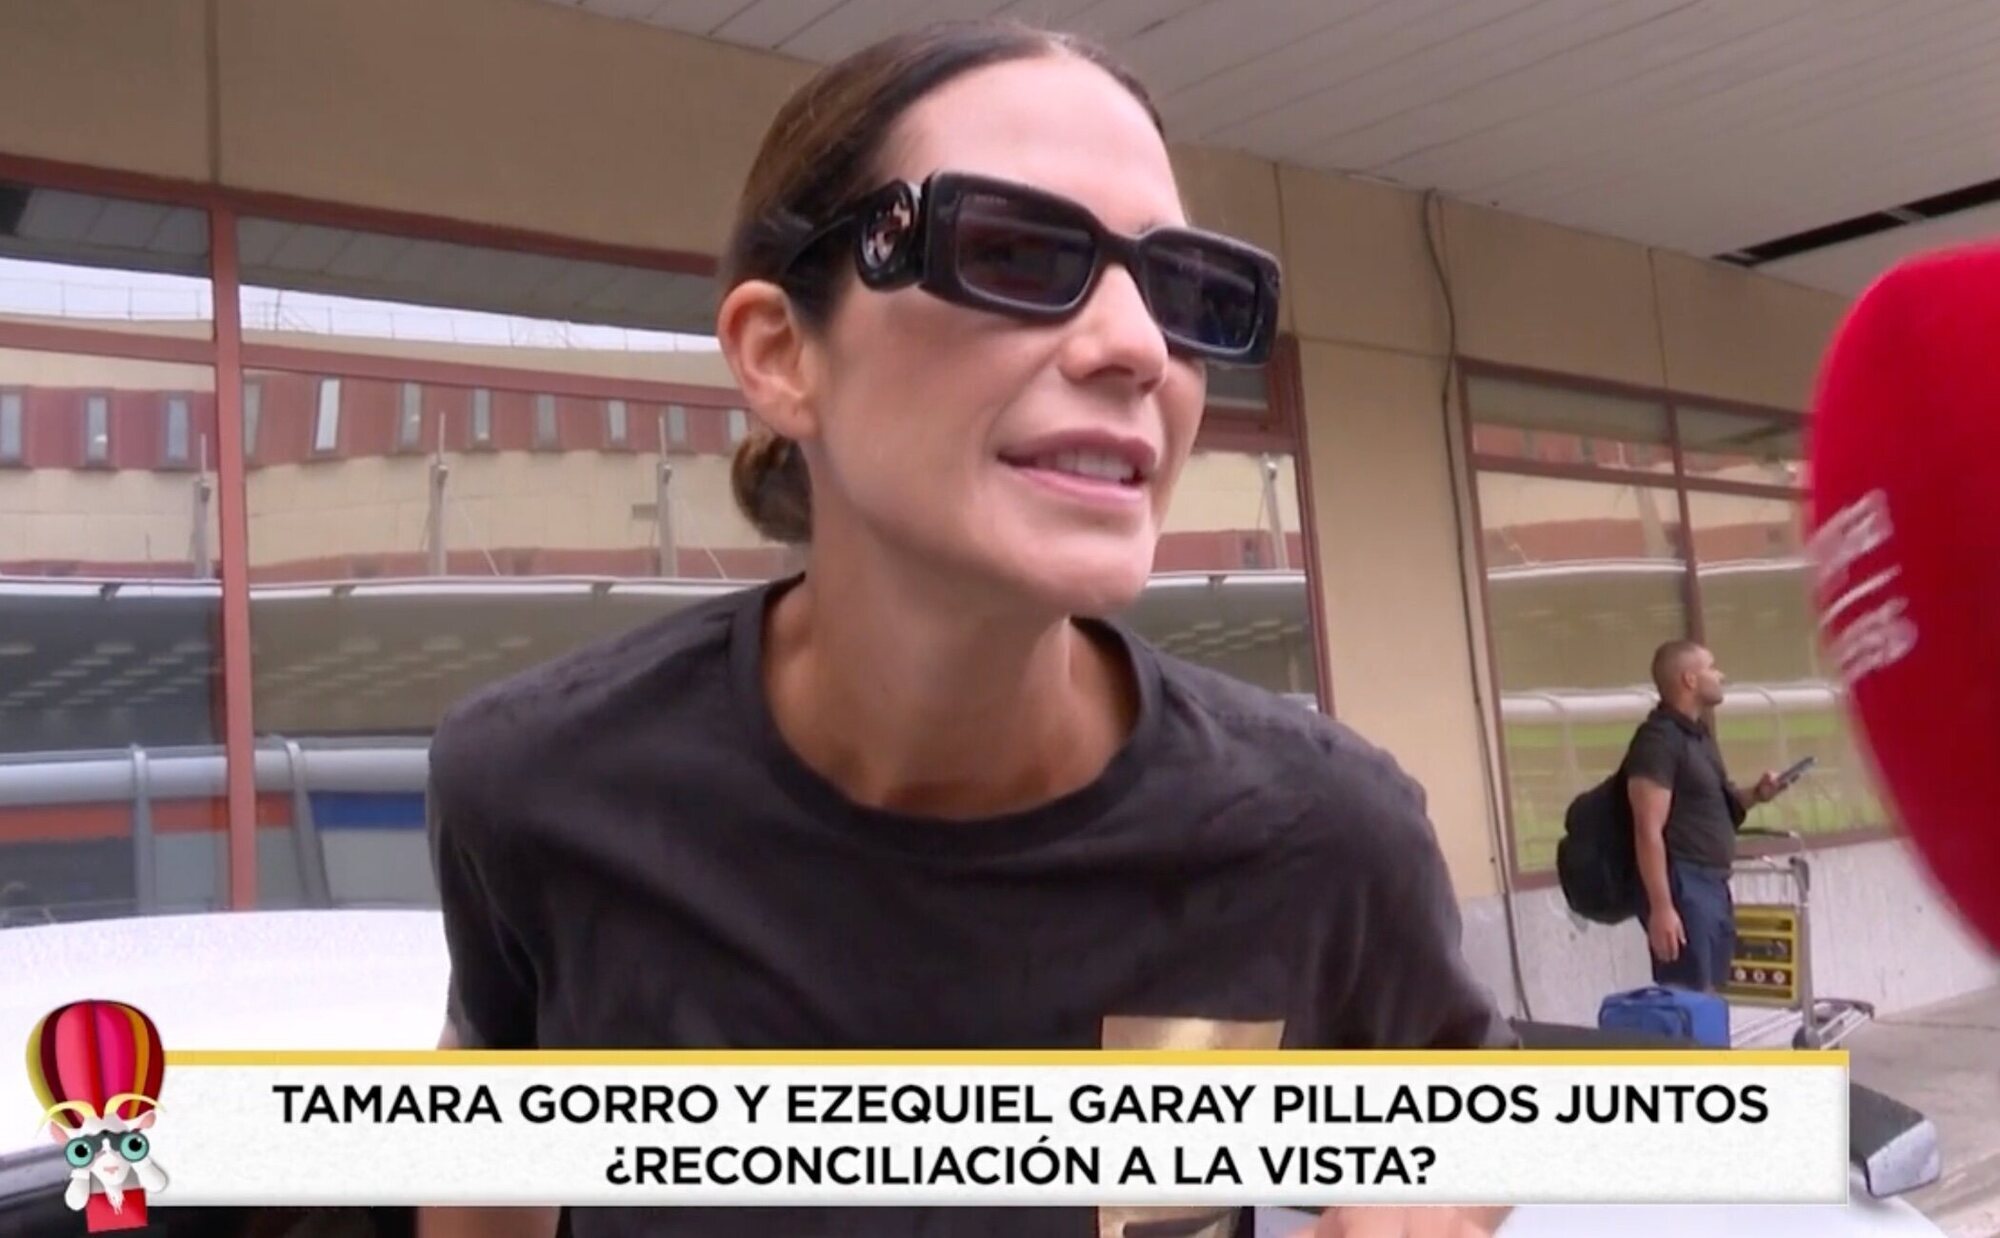 La "cazada" de Tamara Gorro en pleno aeropuerto de Madrid: "¡Uy, no! Esto no nos lo esperábamos"